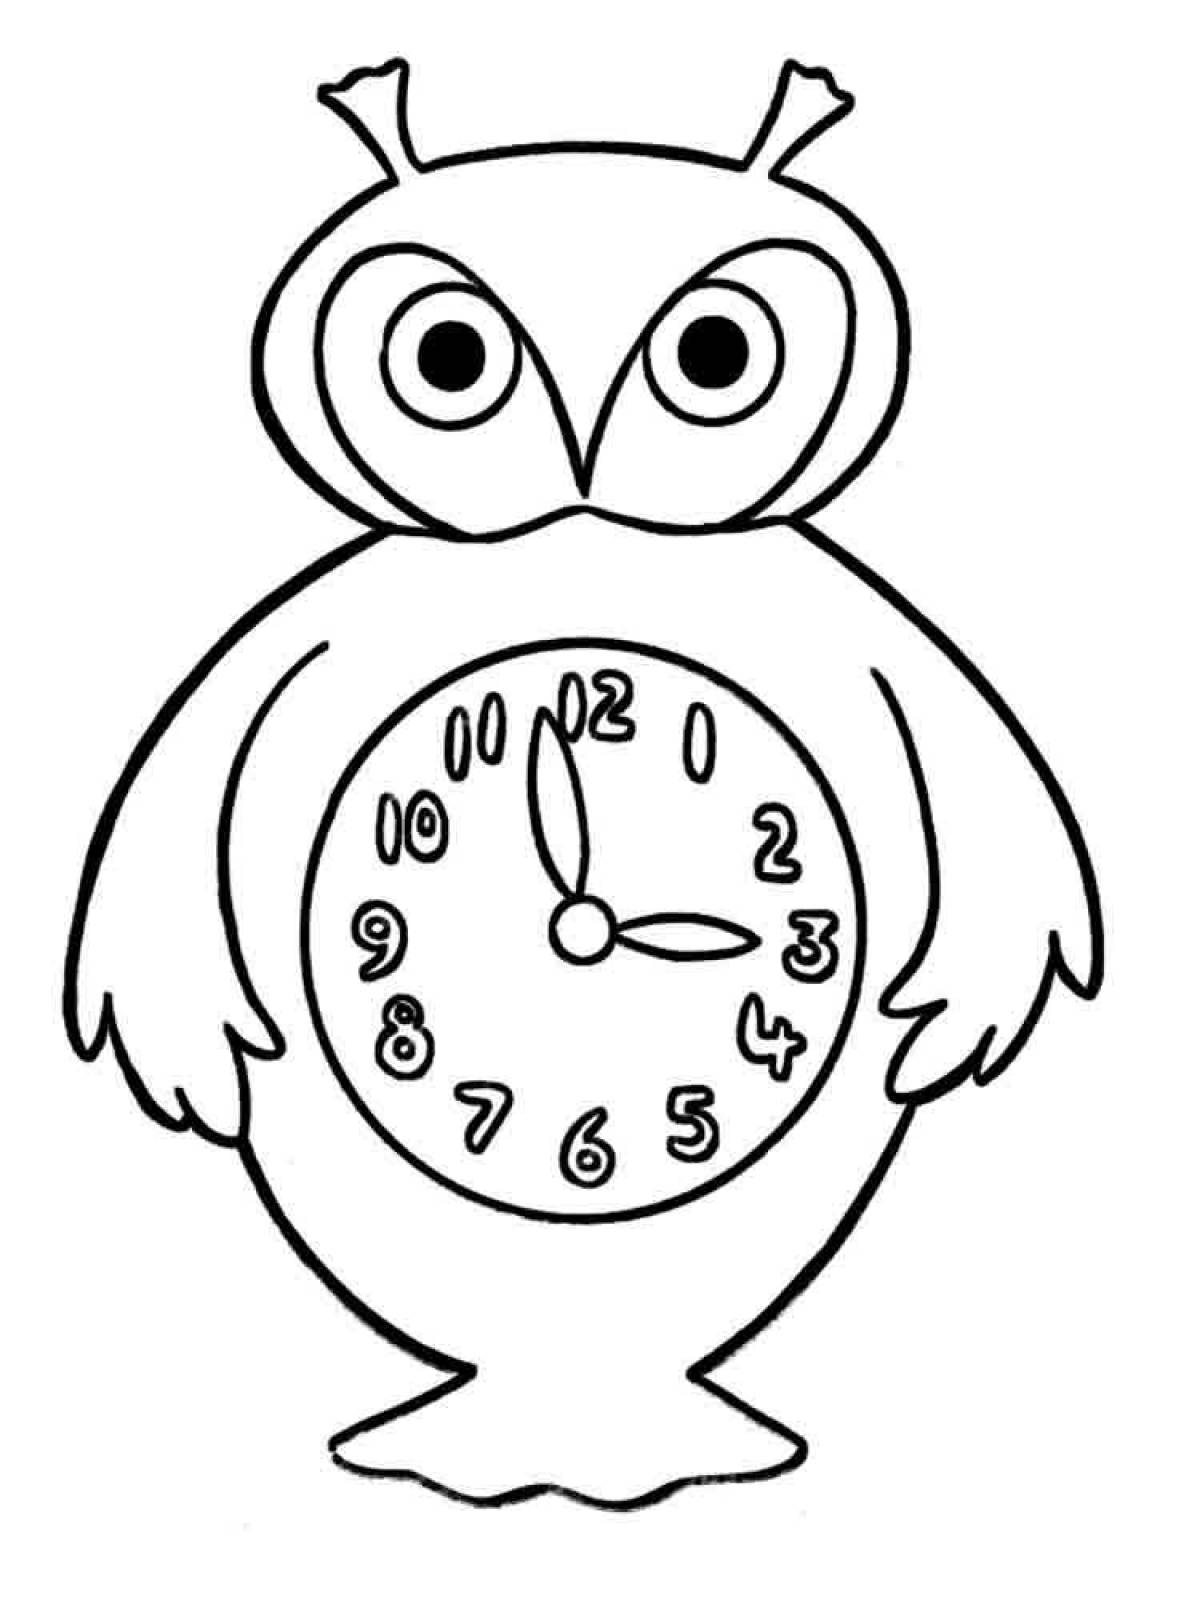 Раскраски часов для детей. Часы раскраска. Часы раскраска для детей. Часики раскраска. Раскраска часов для детей.